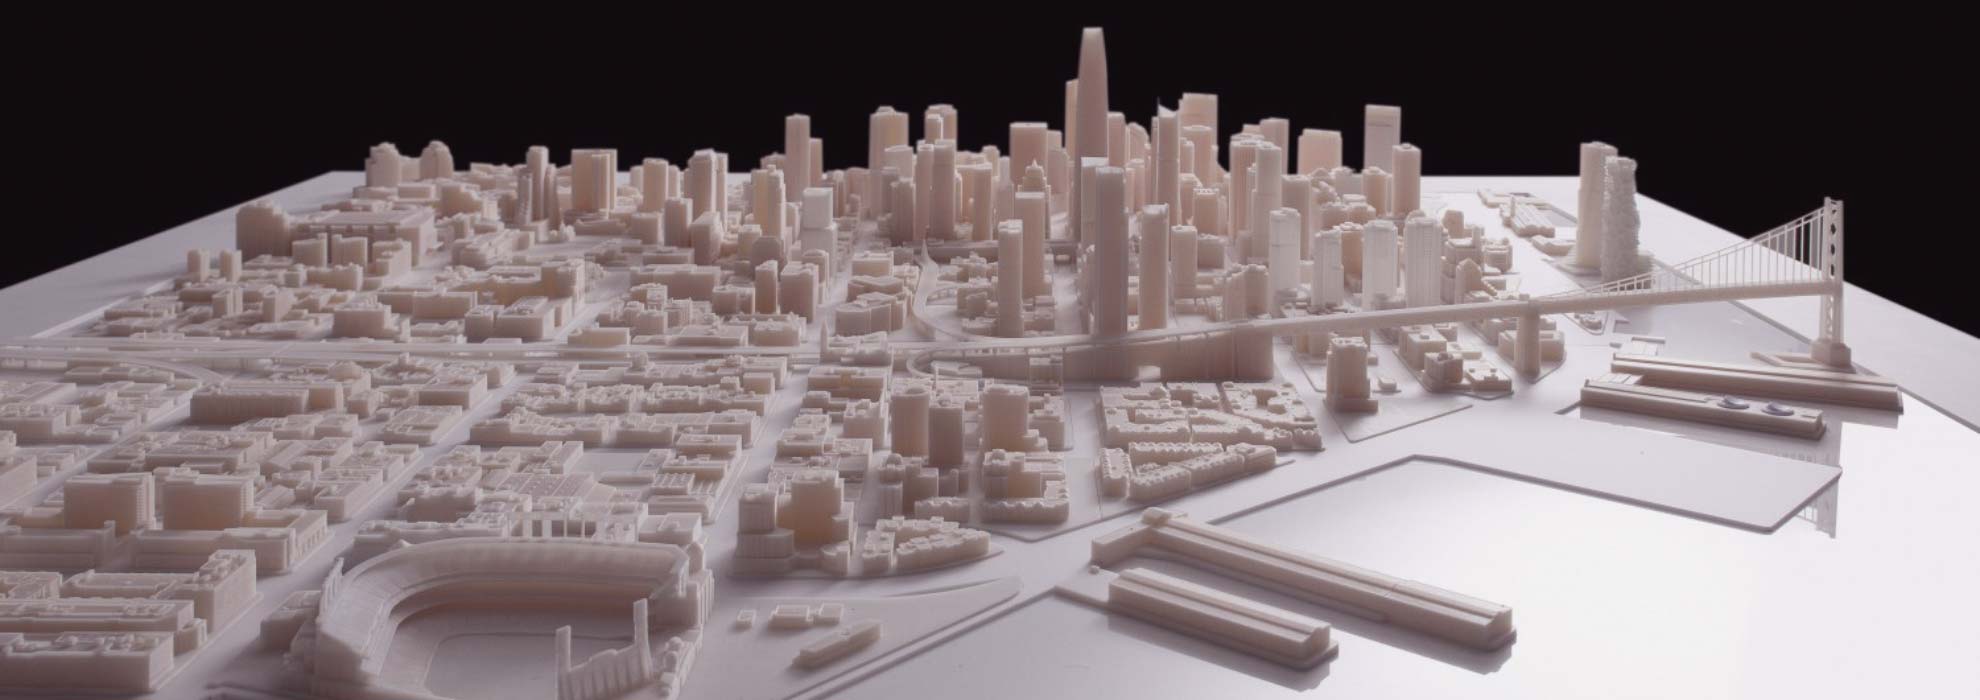 Модель части города напечатанная на 3Д принтере